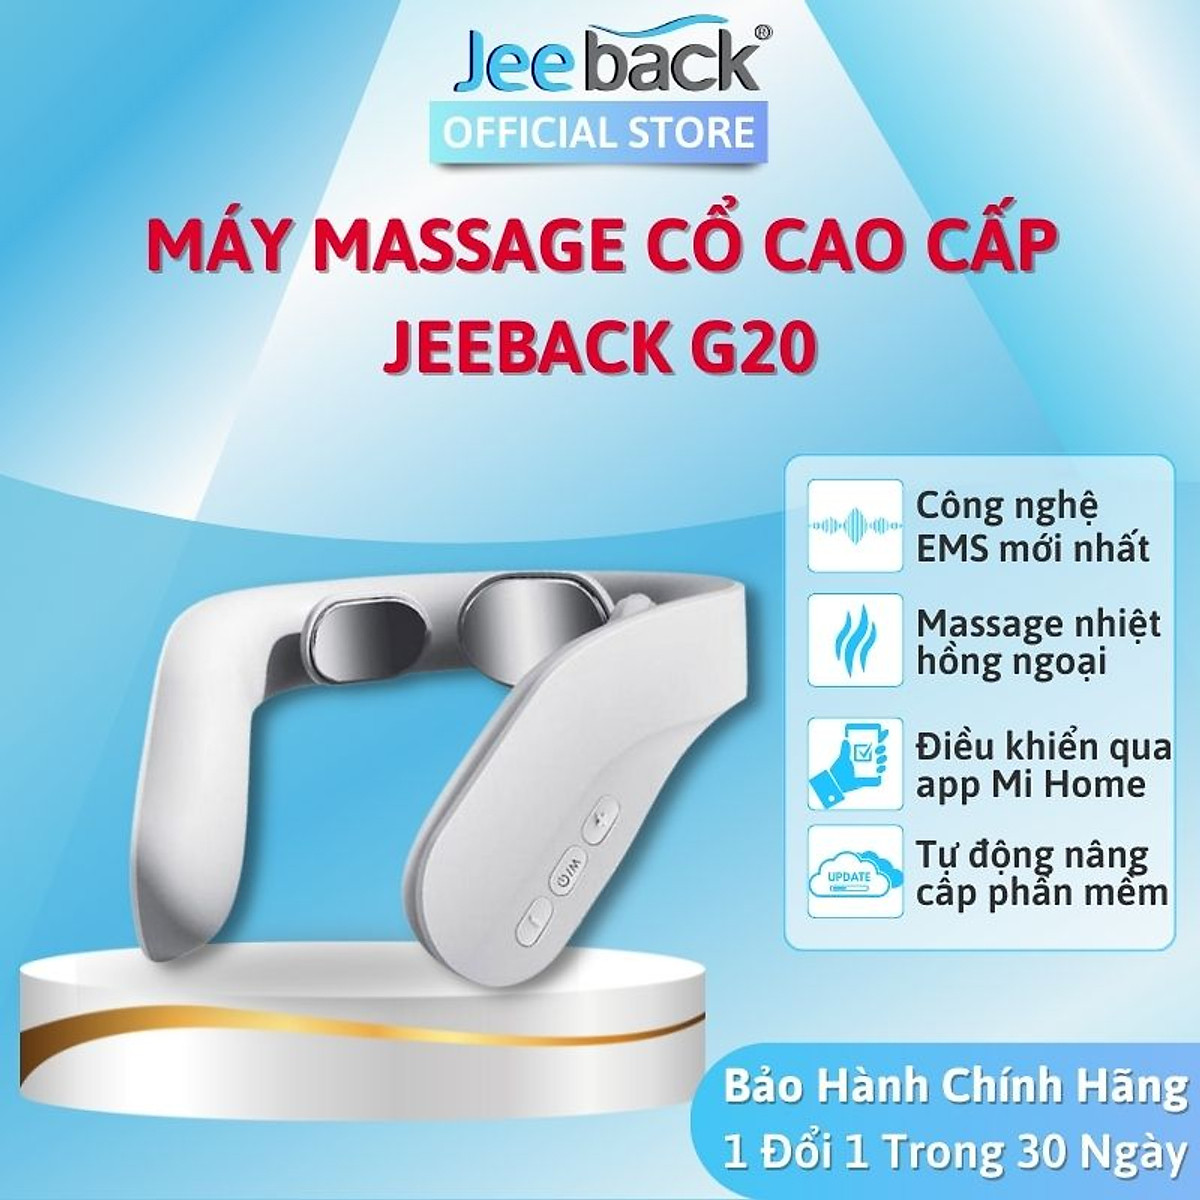 Máy massage cổ vai gáy Jeeback G20 tích hợp remote điều khiển, điều khiển kết nối App, massage nhiệt 3 mức tùy chọn, 4 chế độ massage kết hợp 15 mức cường độ, hàng chính hãng